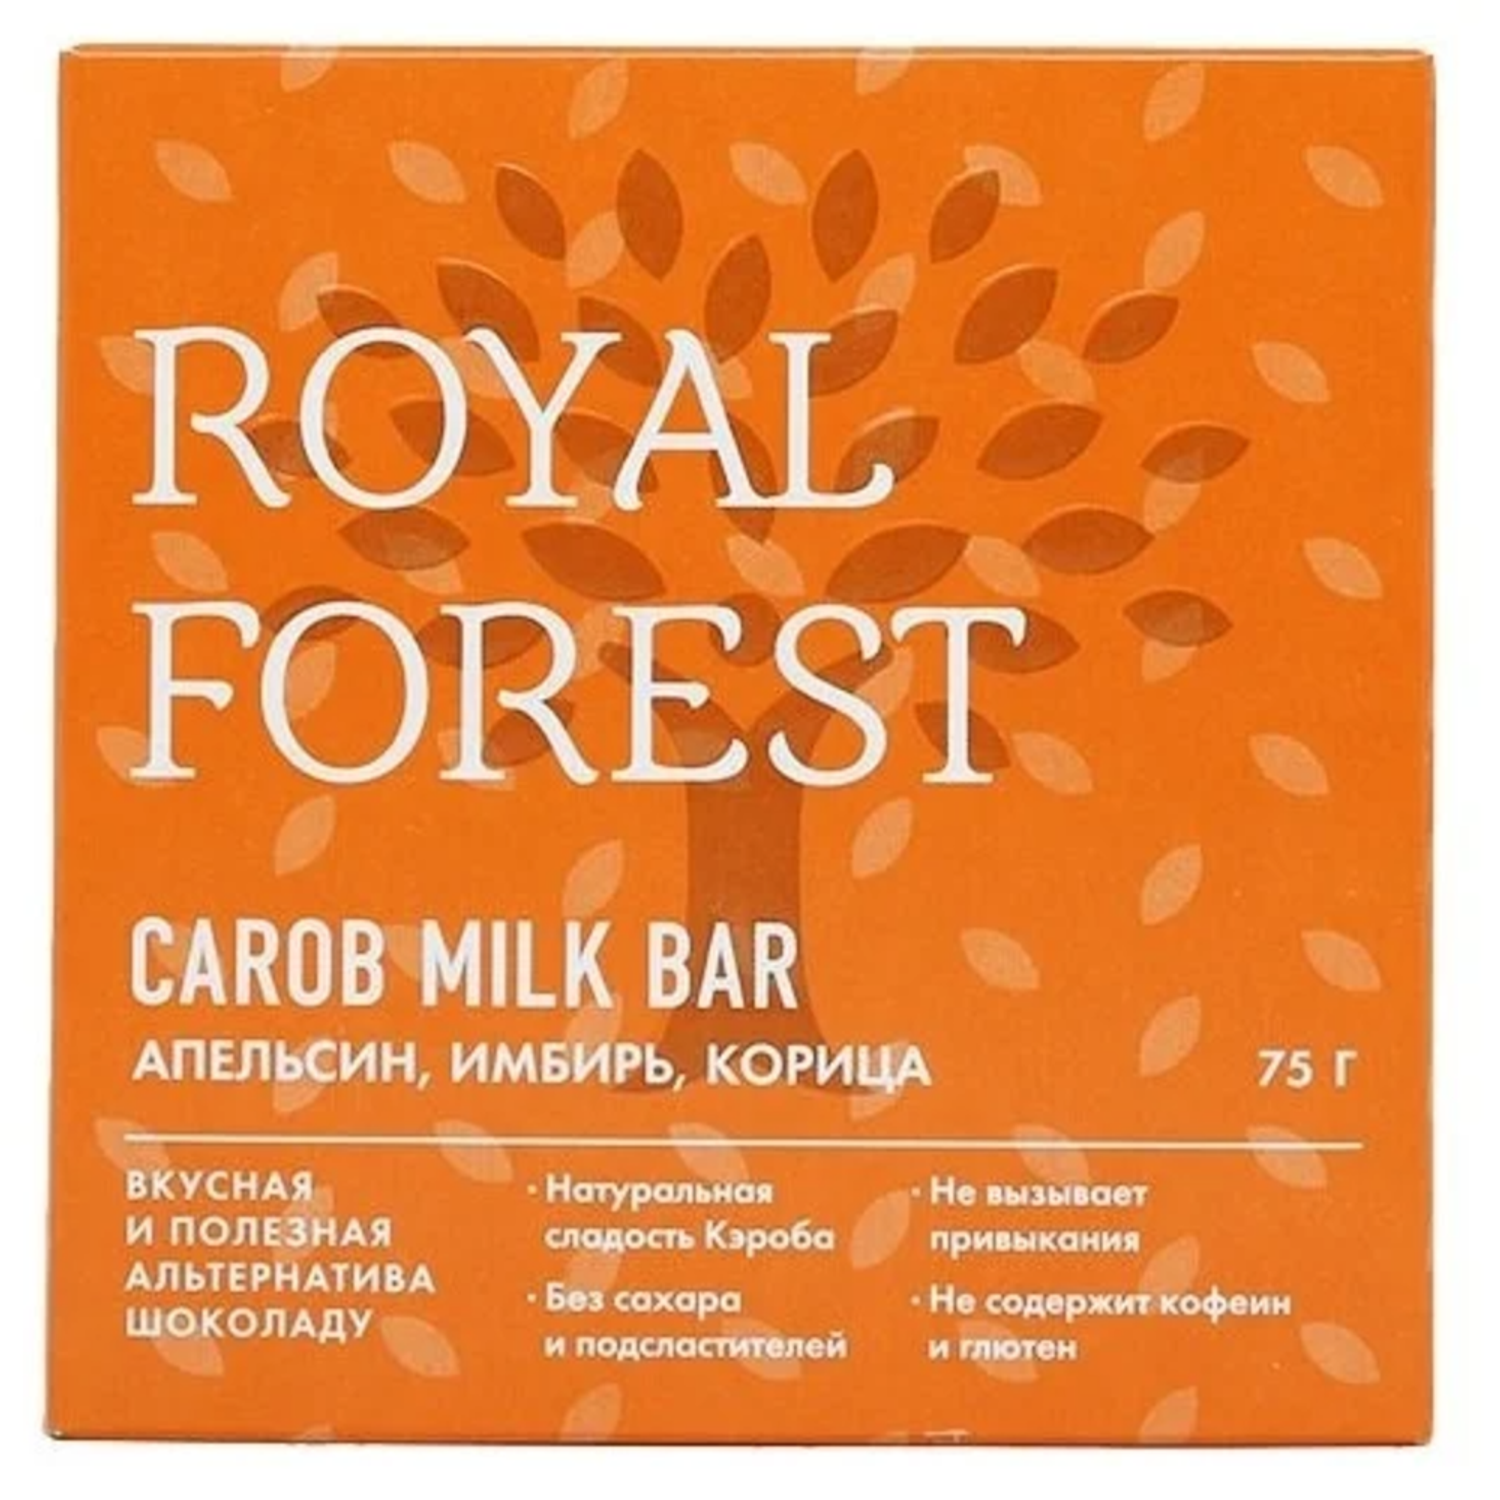 Плиточный шоколад ROYAL FOREST молочный с апельсином имбирем и корицей - фото 1